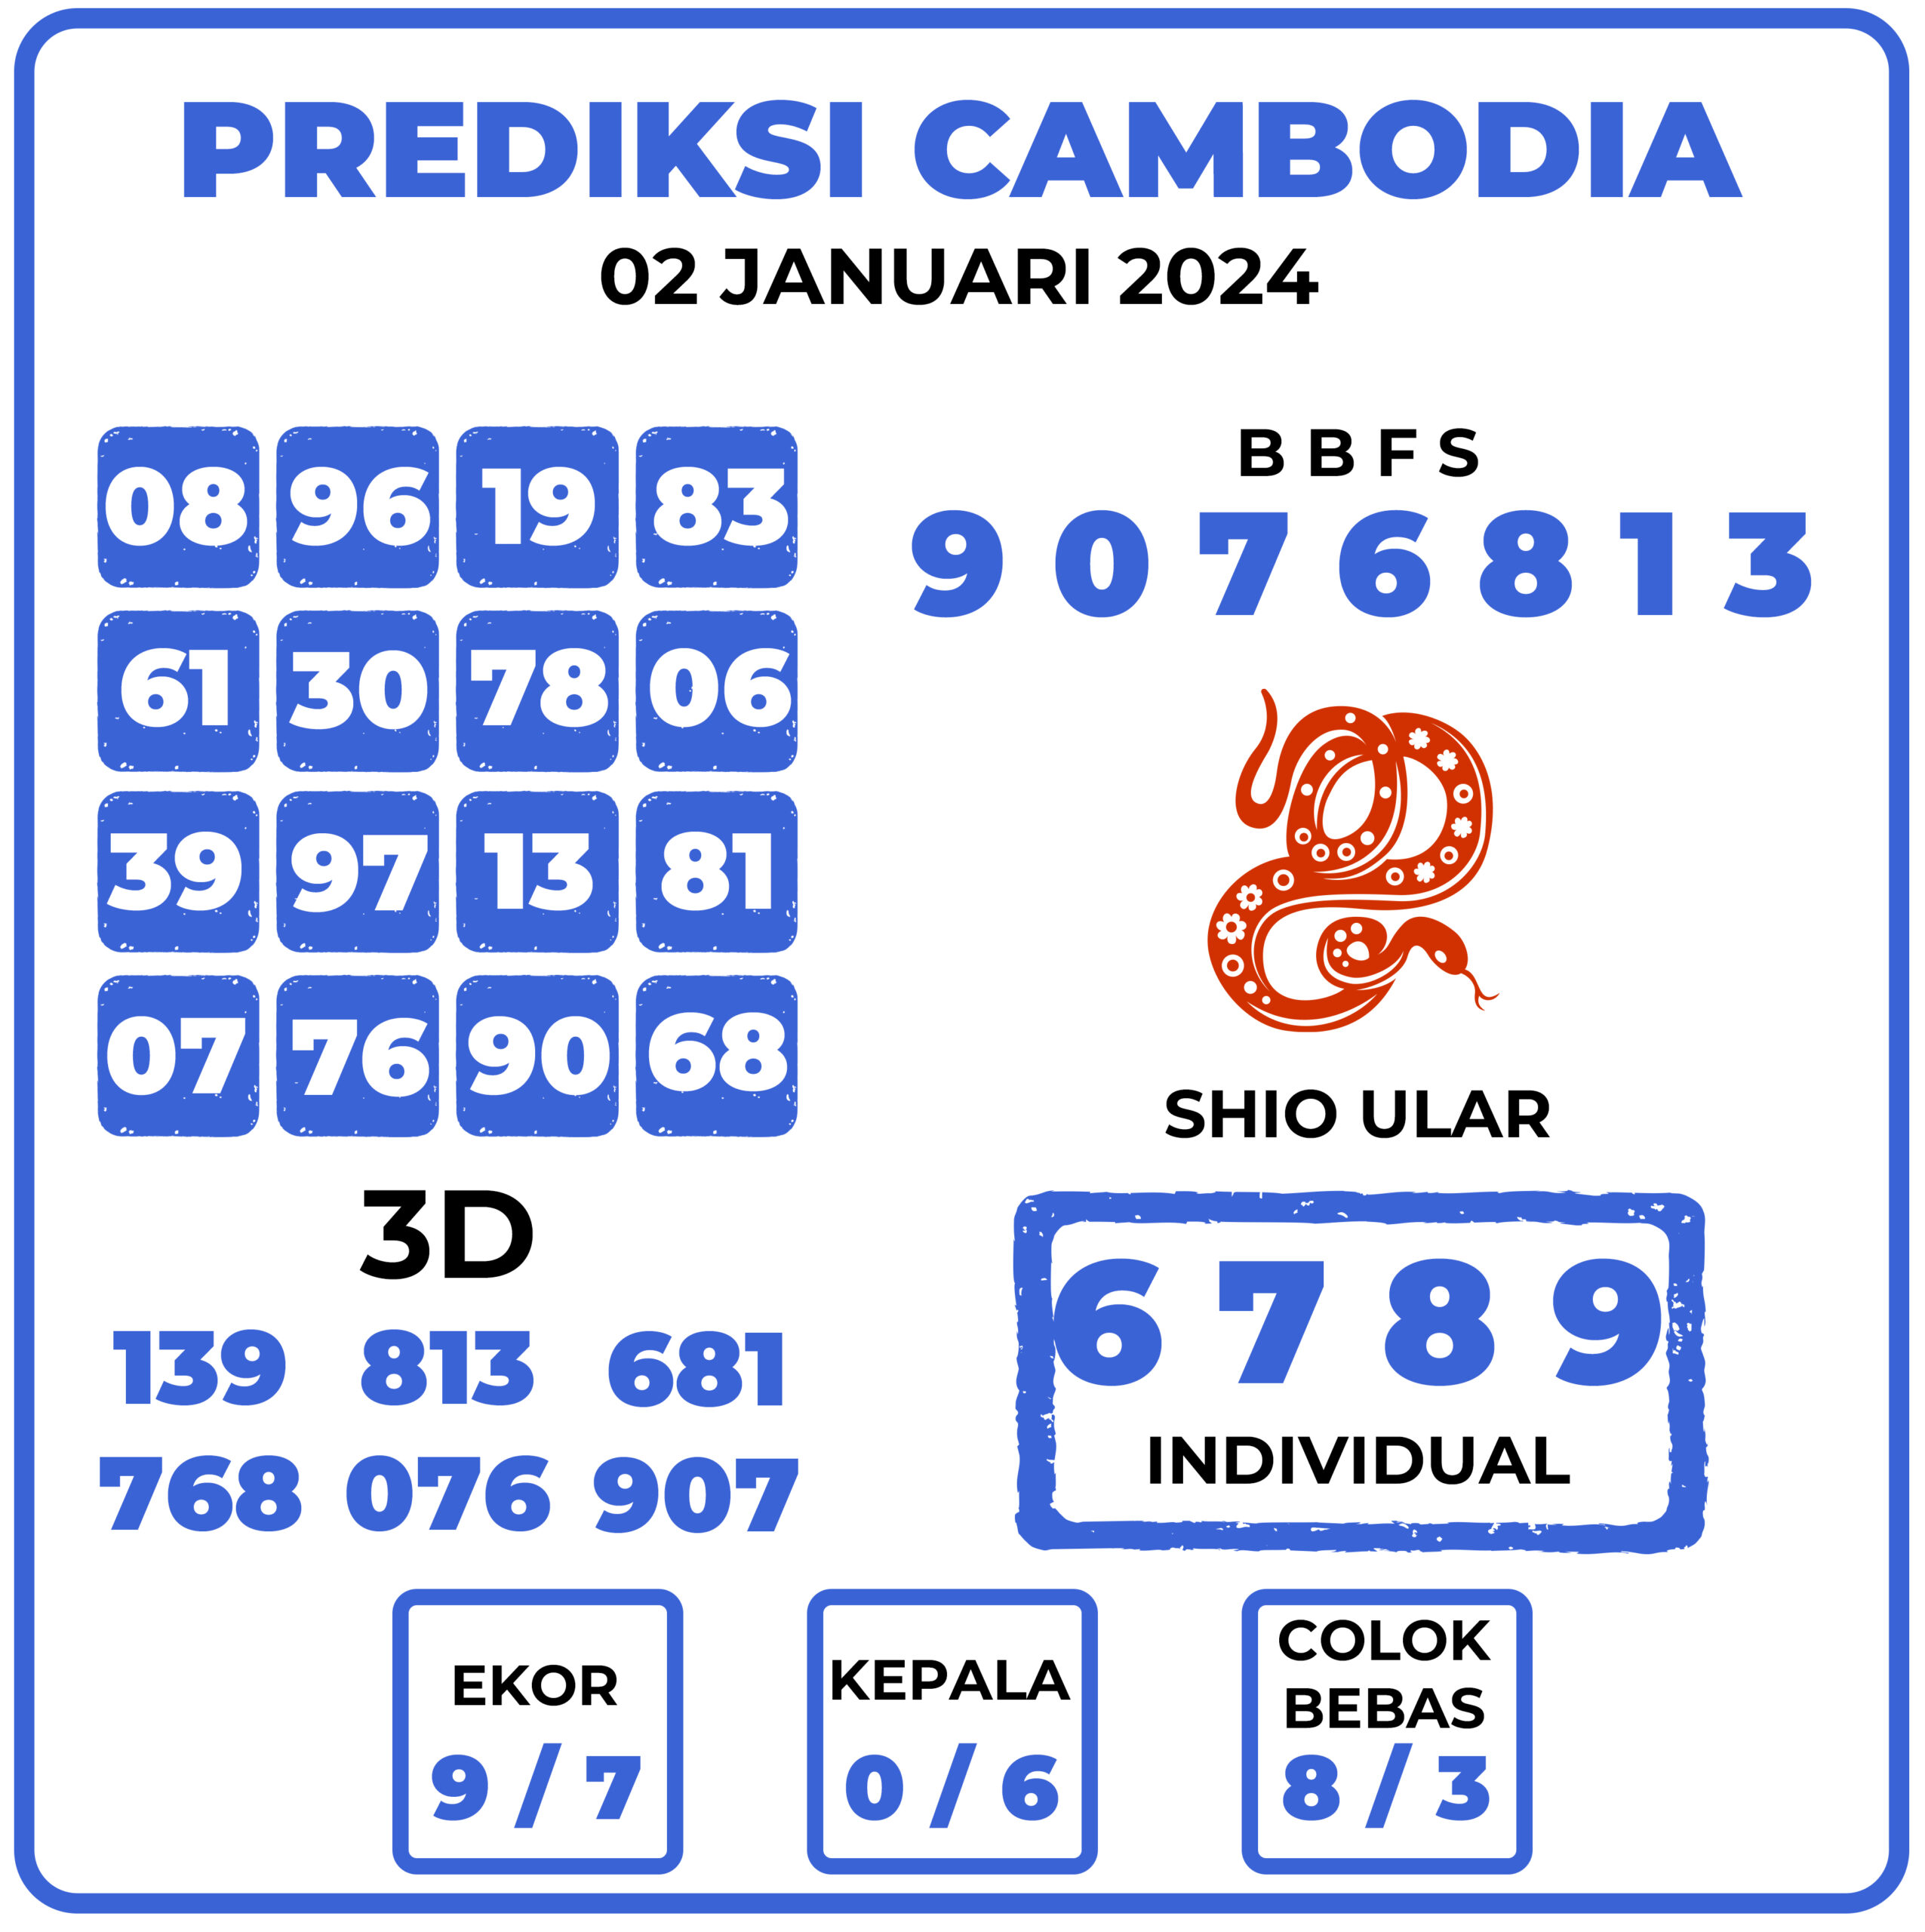 Prediksi Togel Cambodia 02 Januari 2024